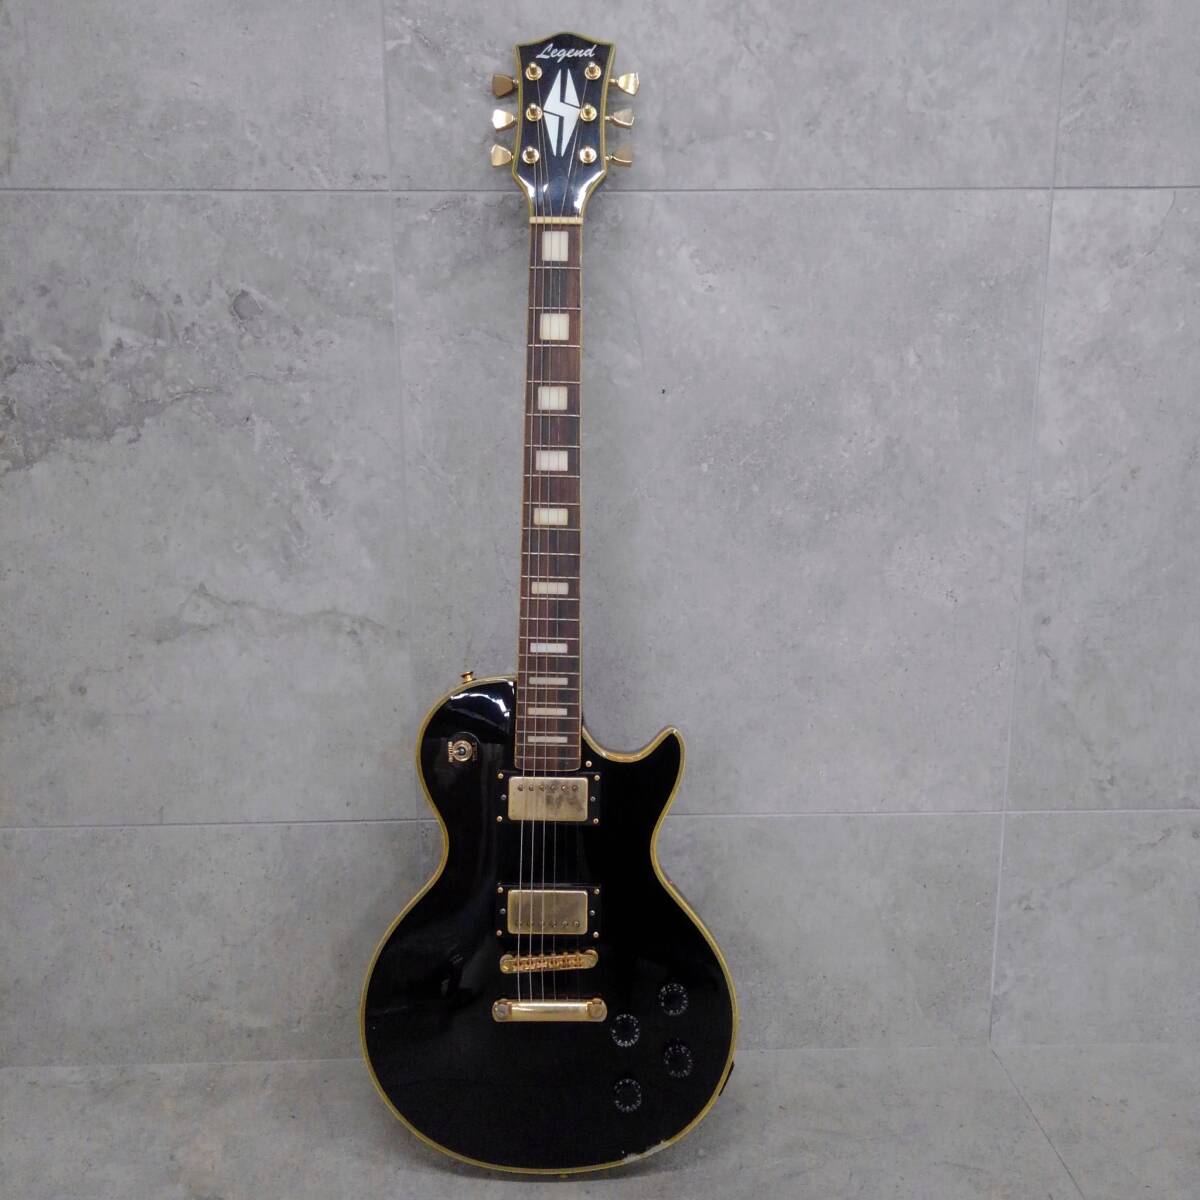 H13759(051)-811/OR6000 Legend レジェンド レスポールタイプ エレキギターの画像1